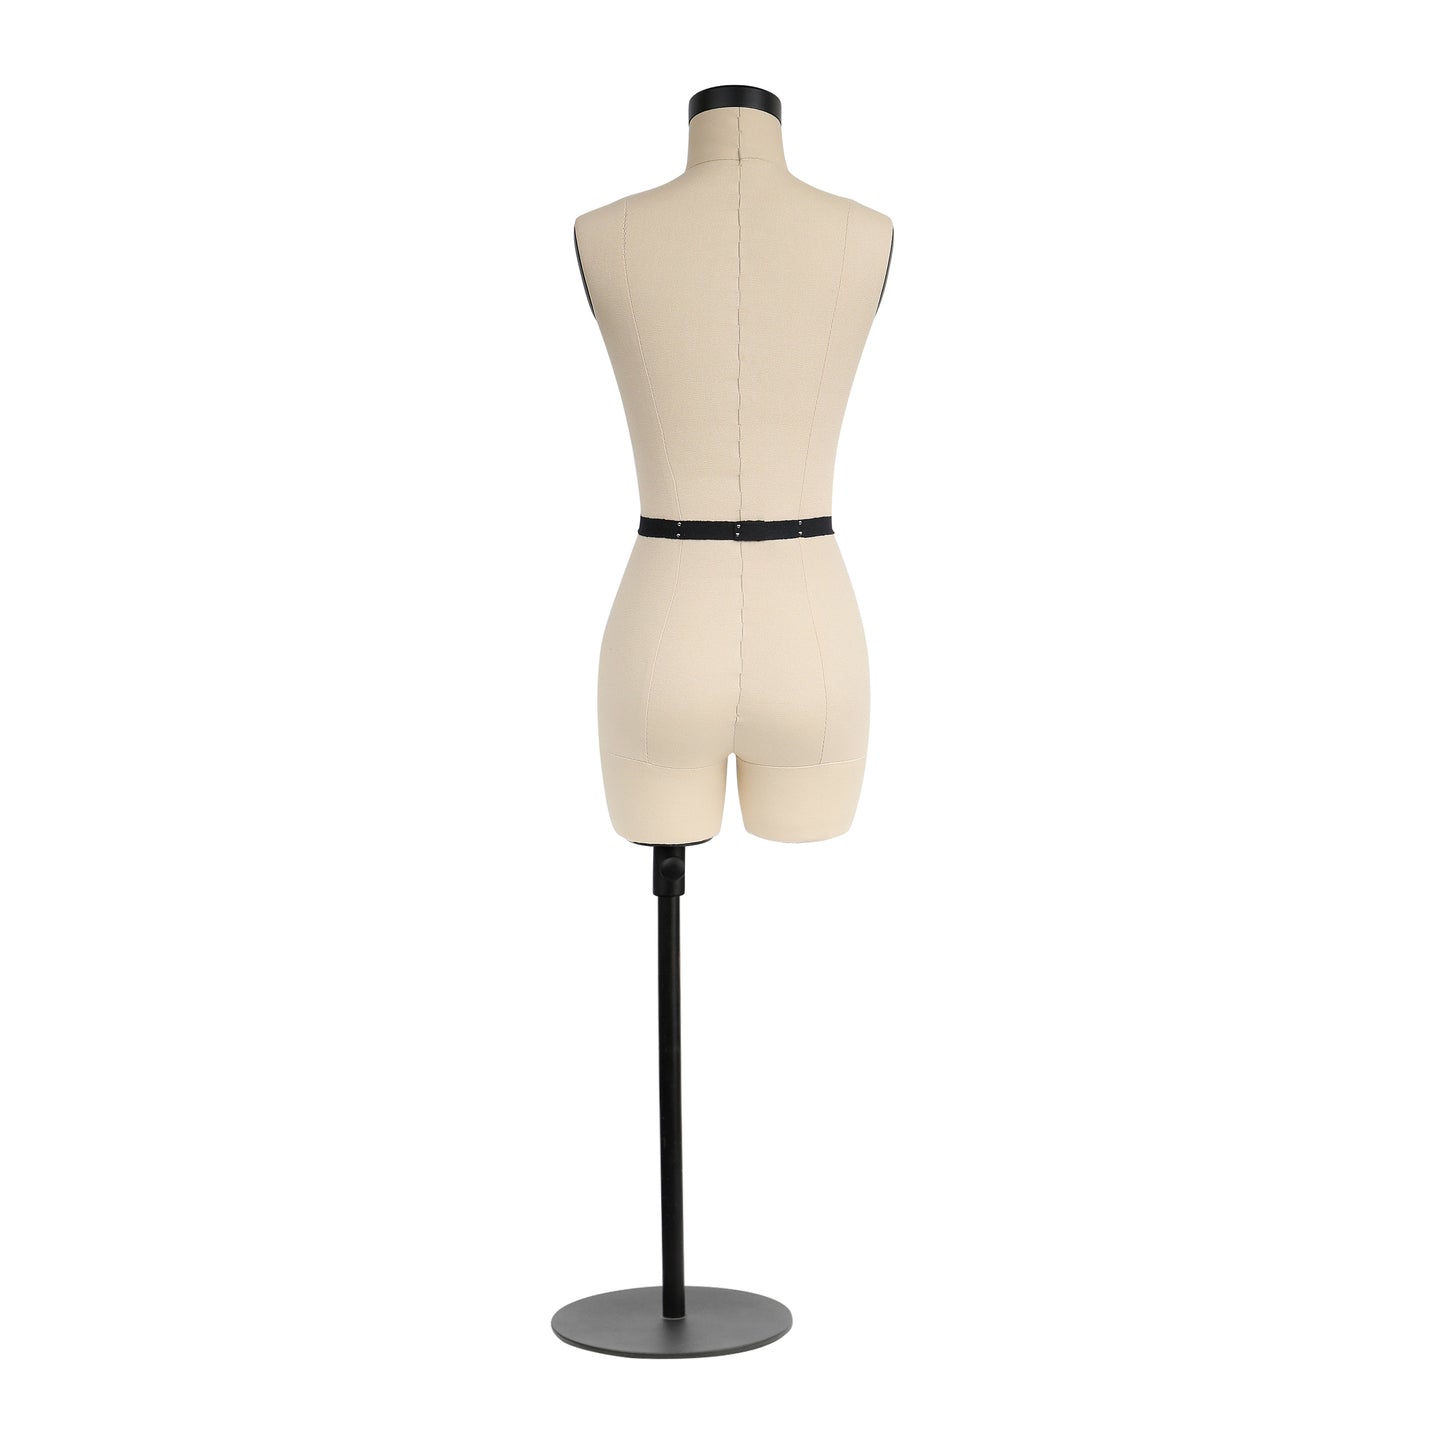 DE-LIANG Size 8 Half scale dress form,DL262 mini sewing tailor fitting mannequin dressmaker dummy, female 1/2 miniature Scale couture, NOT ADULT SIZE drap DE-LIANG